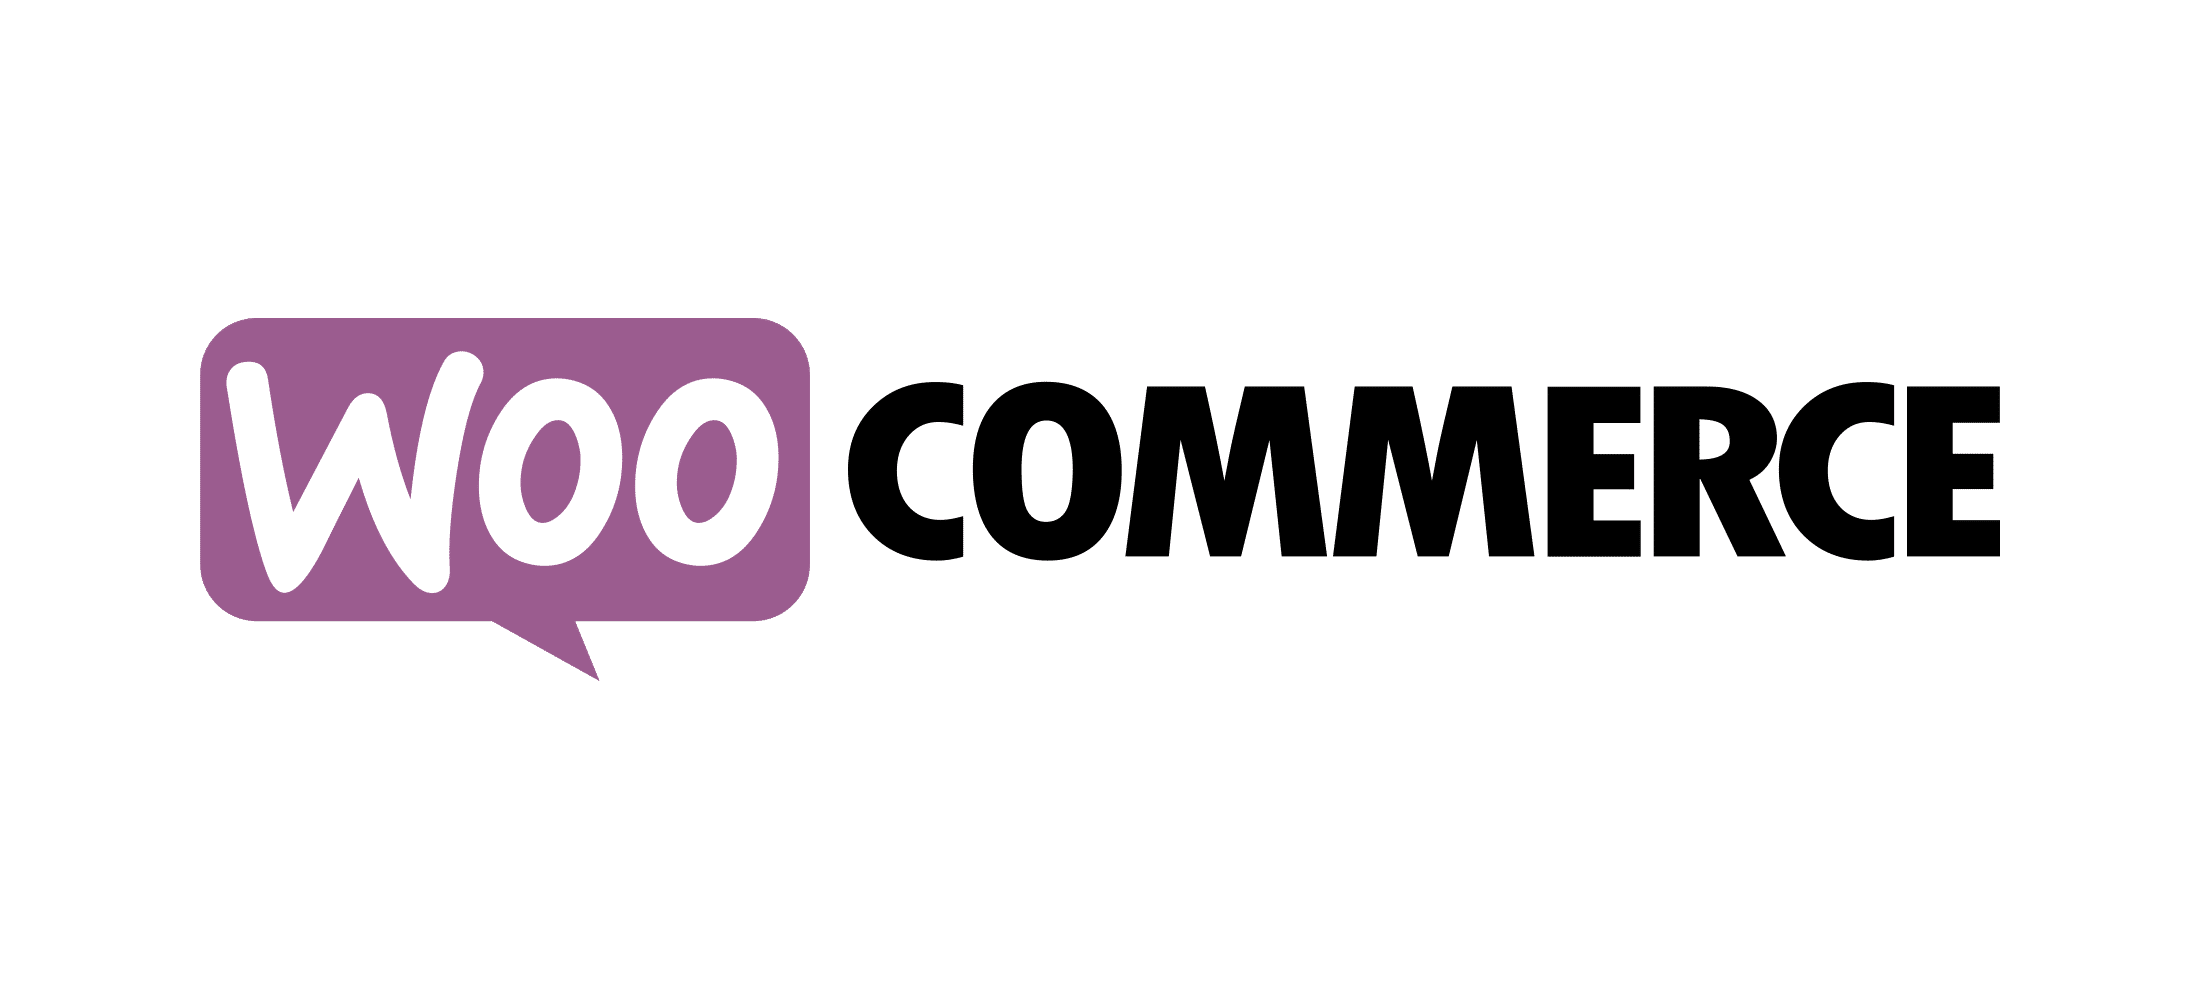 woocommerce logo - Glop Software TPV